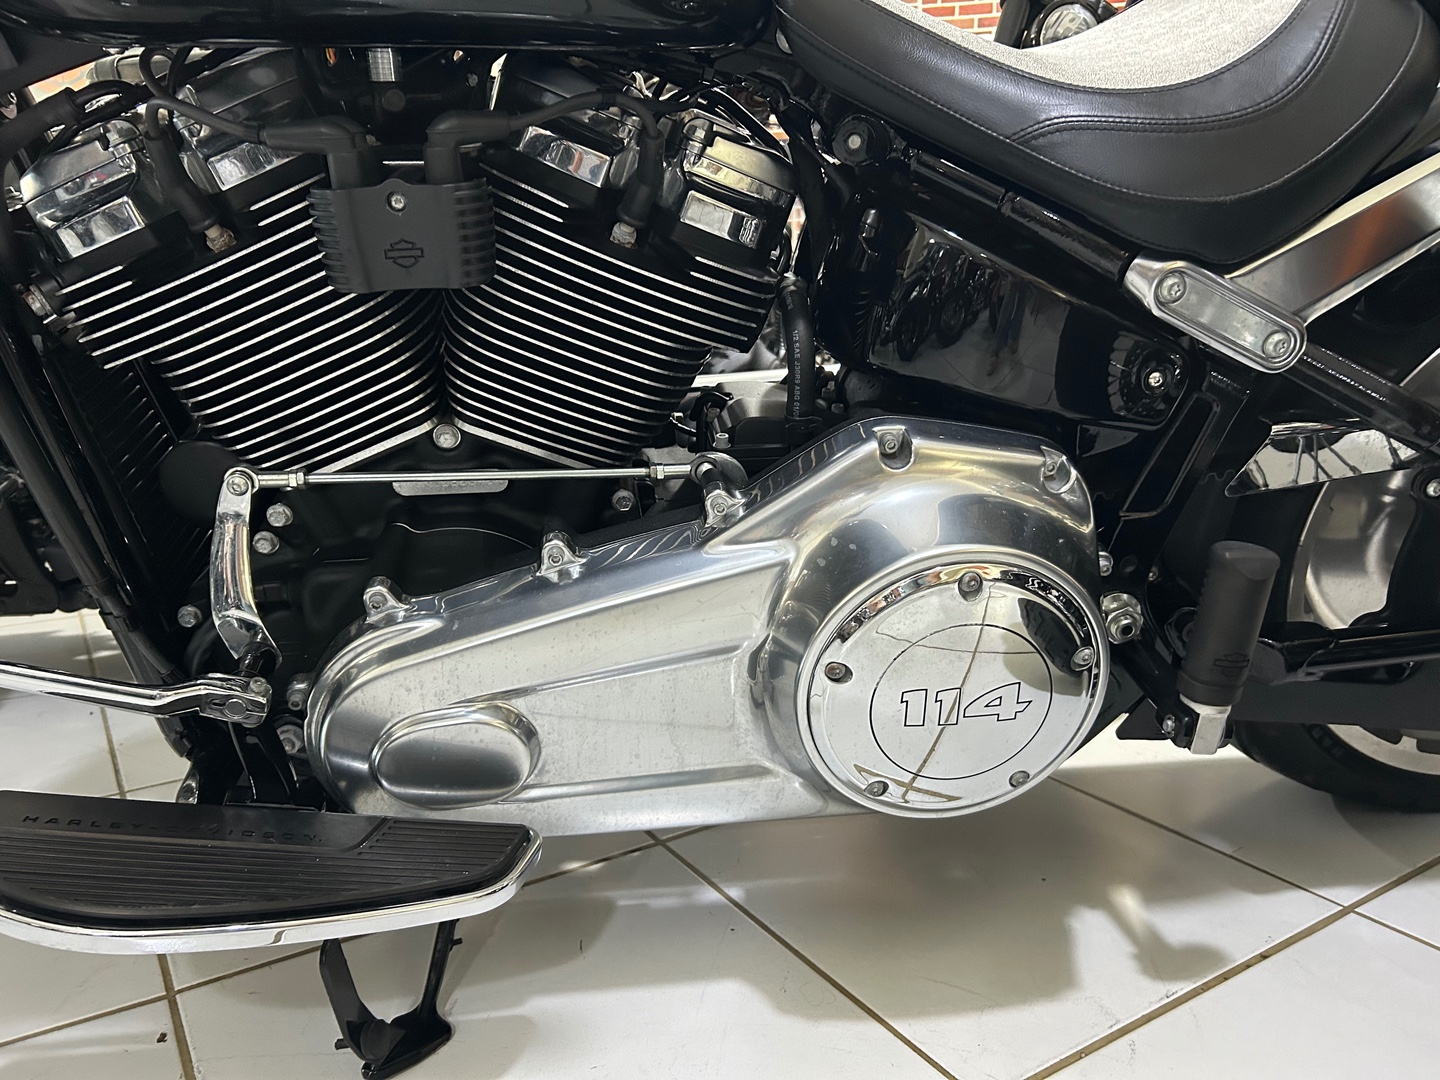 motores y pasolas - Harley Davidson Fat Boy 114 año 2018 2